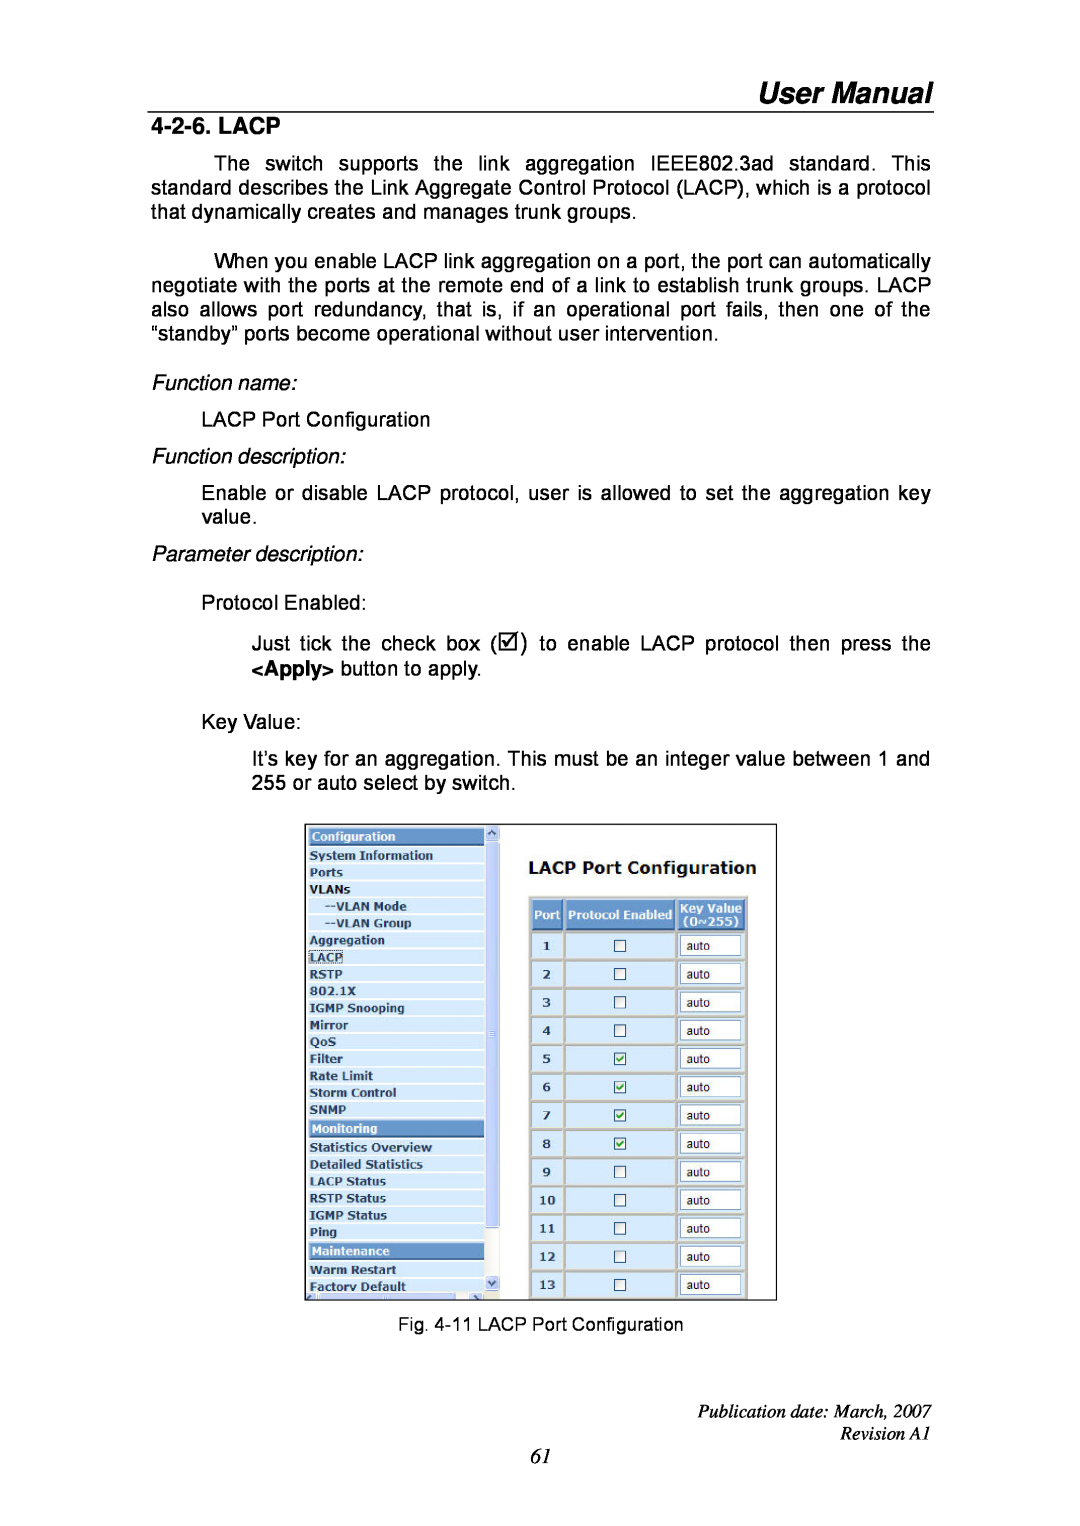 Ruby Tech GS-1224L manual Lacp, User Manual, Function name, Function description, Parameter description 